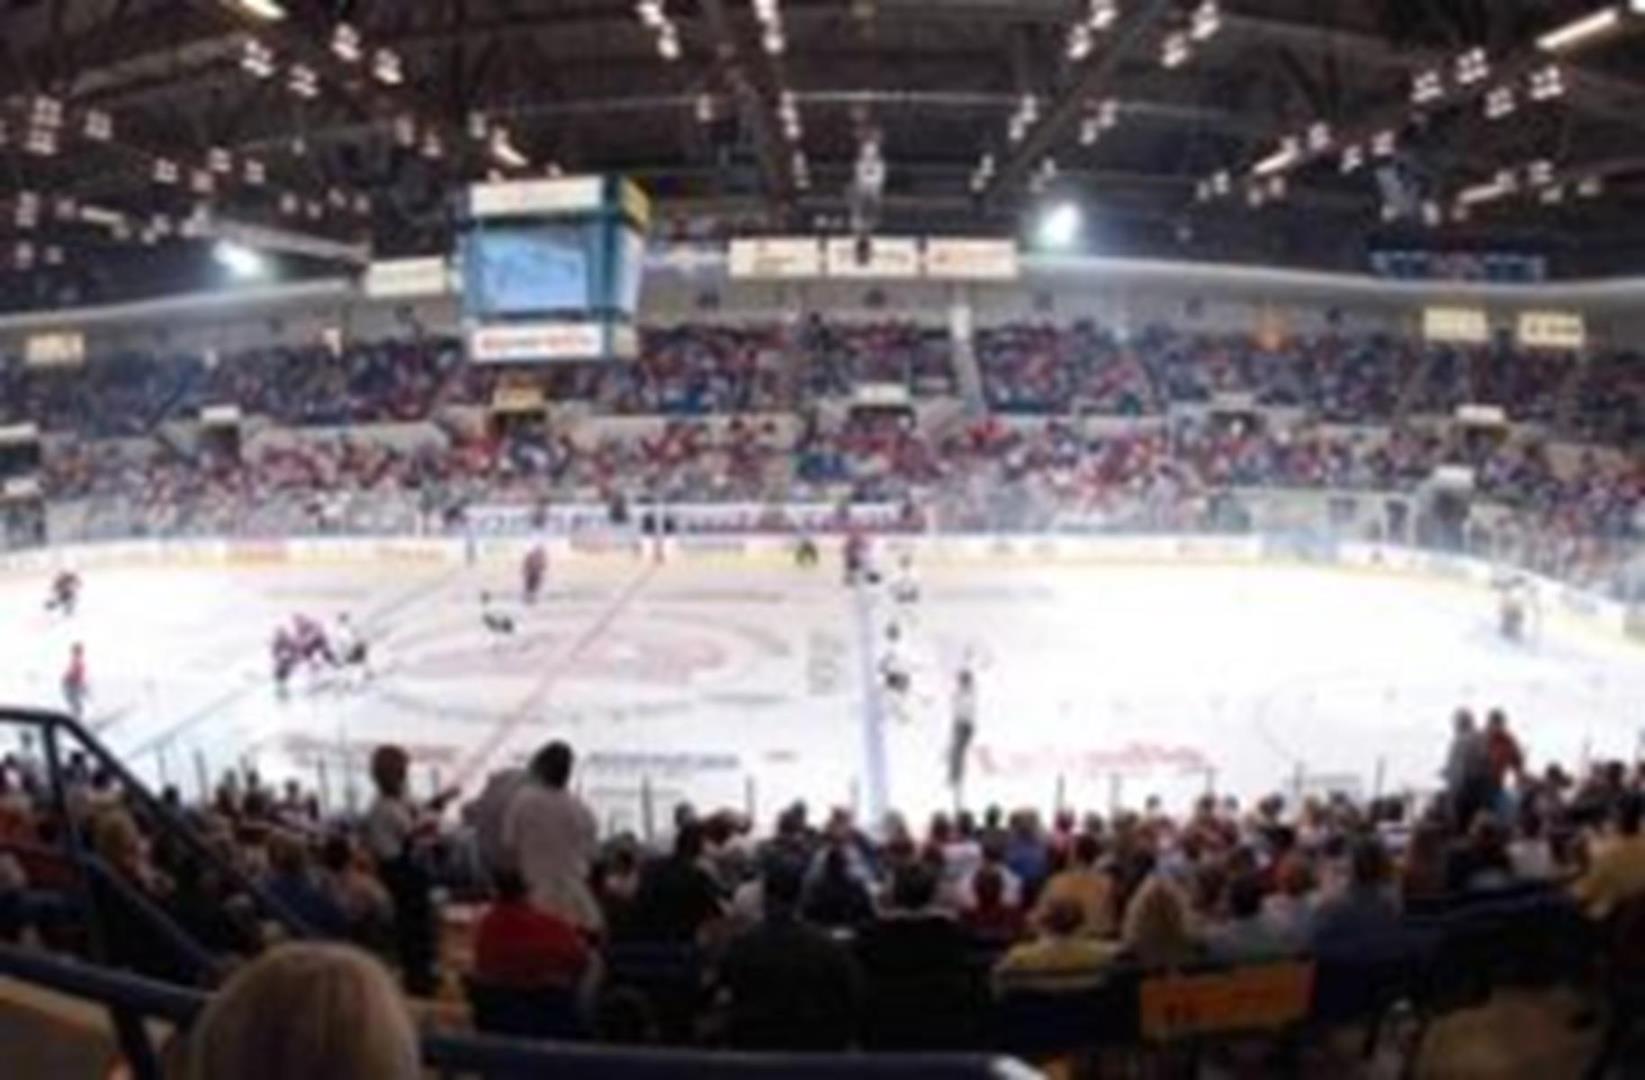 Dow Event Center - Hockey 1